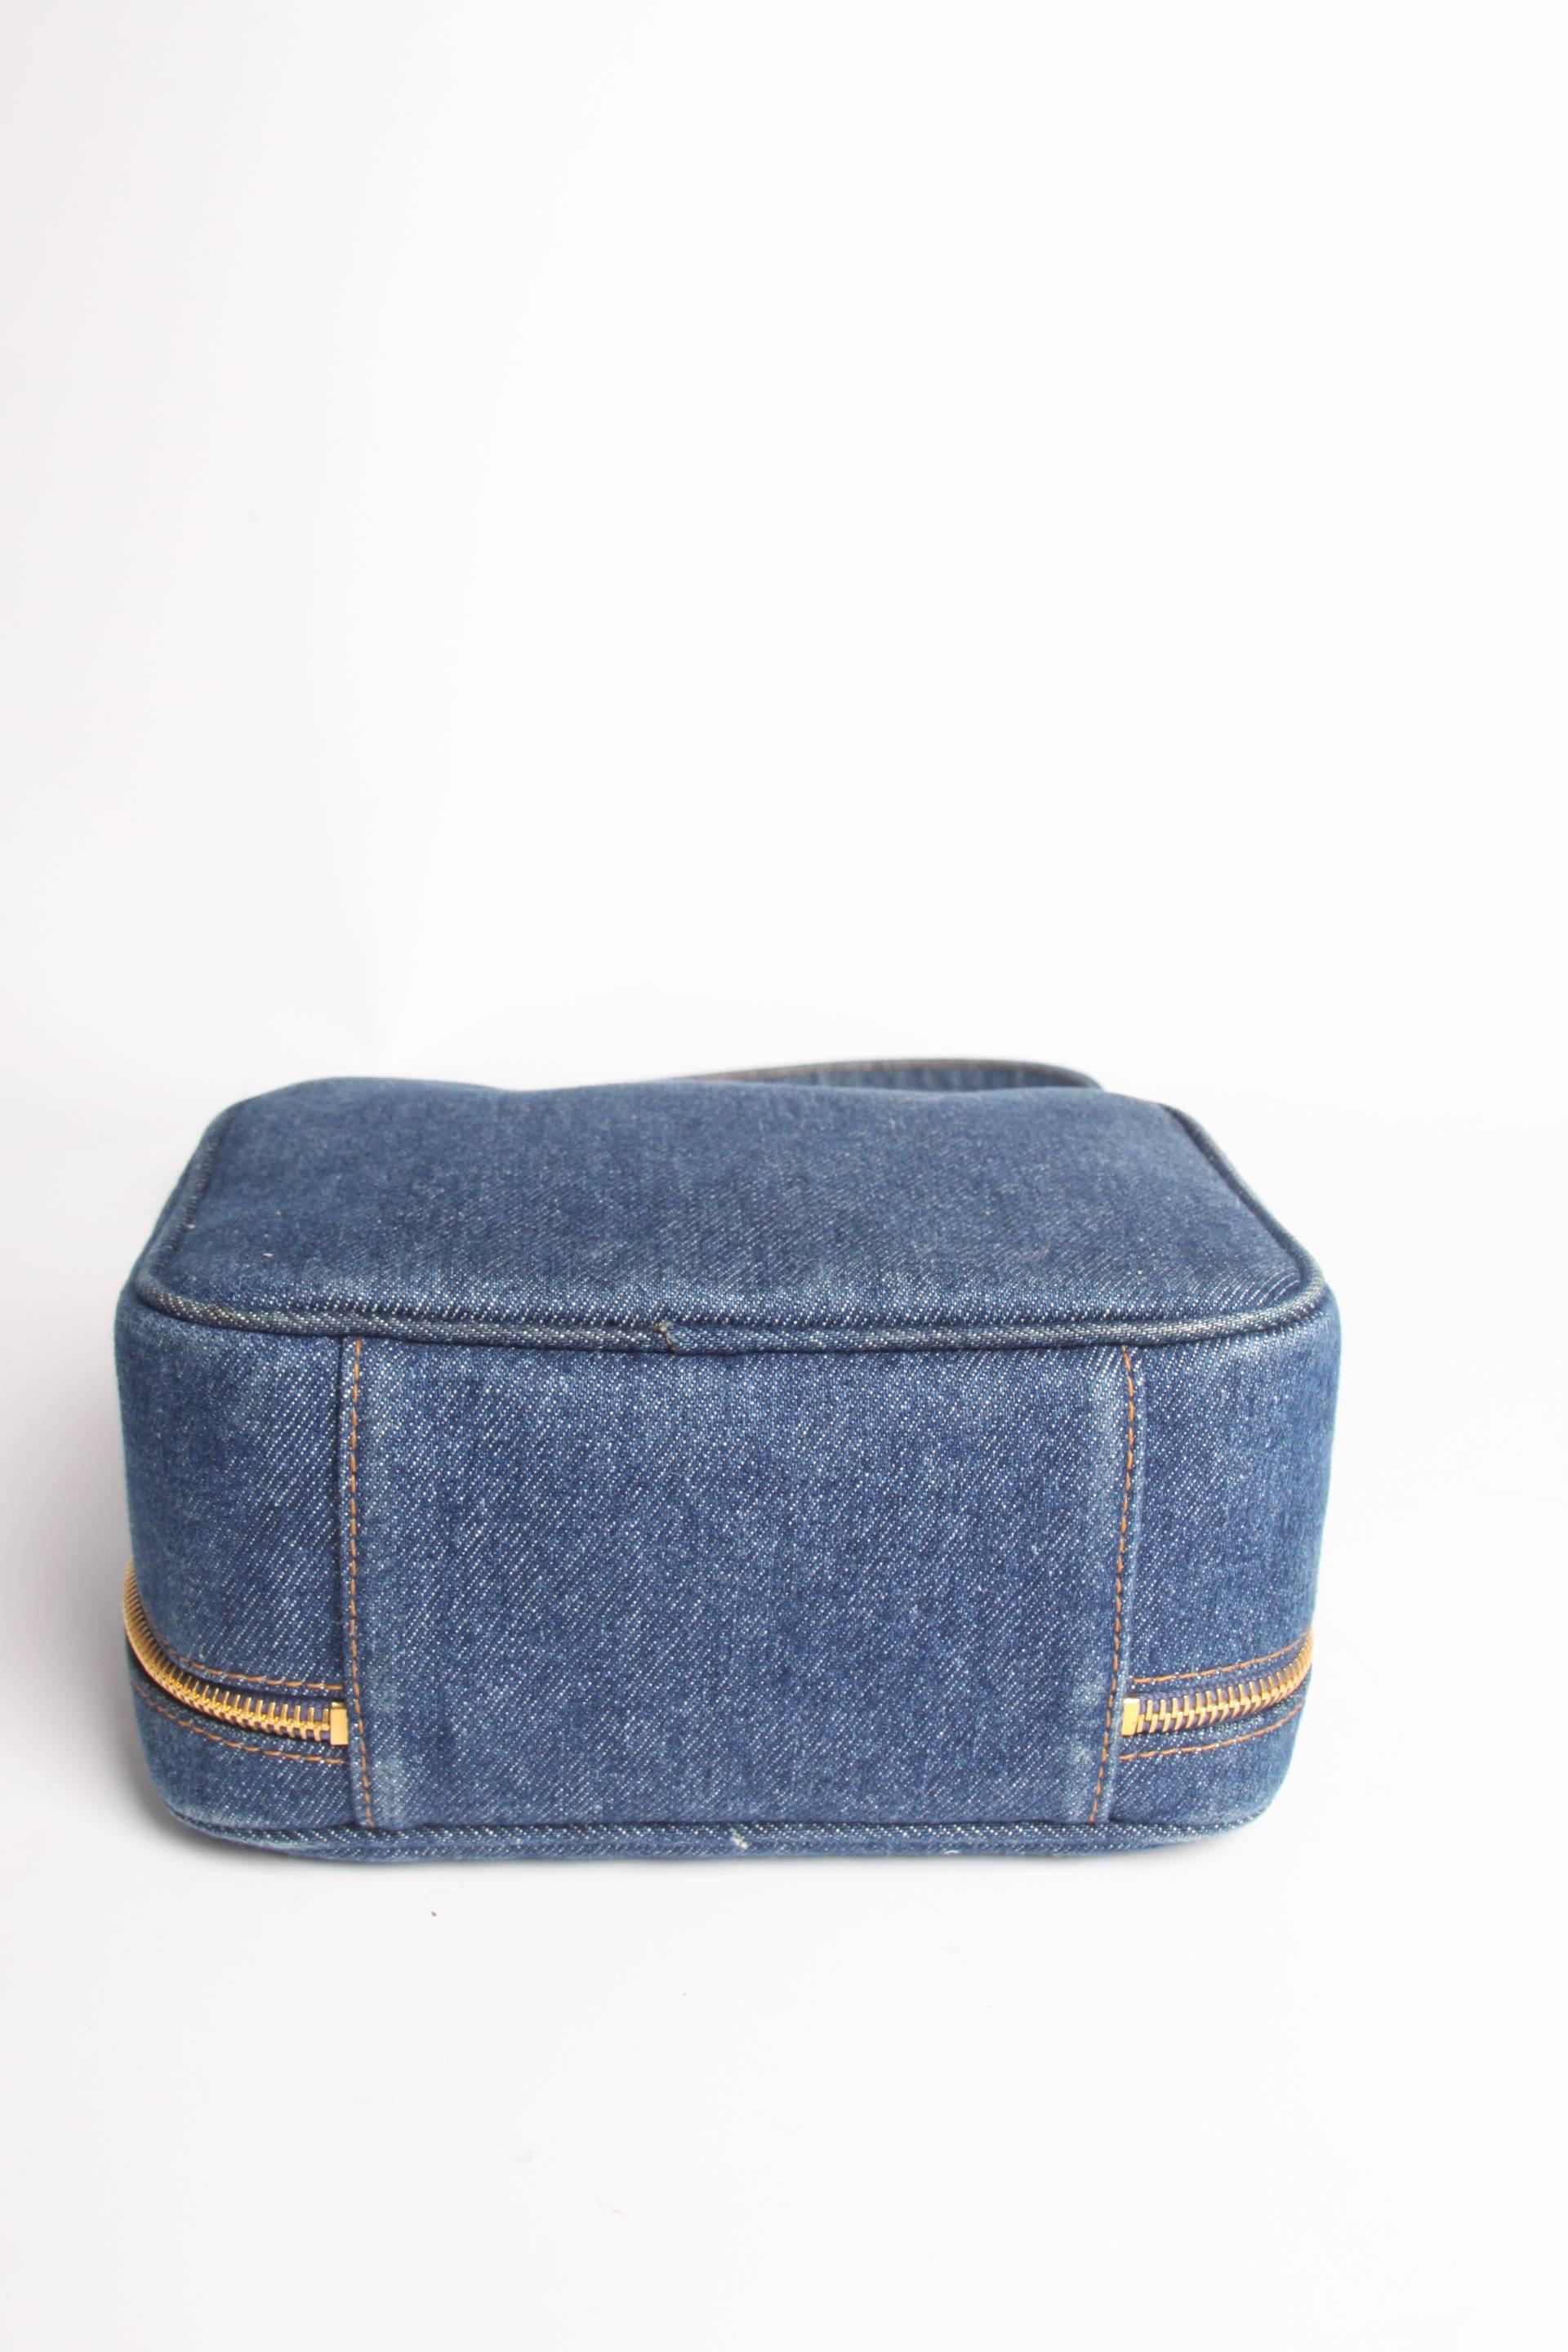       Chanel Vanity Bag Denim Vintage - blue 1996 1